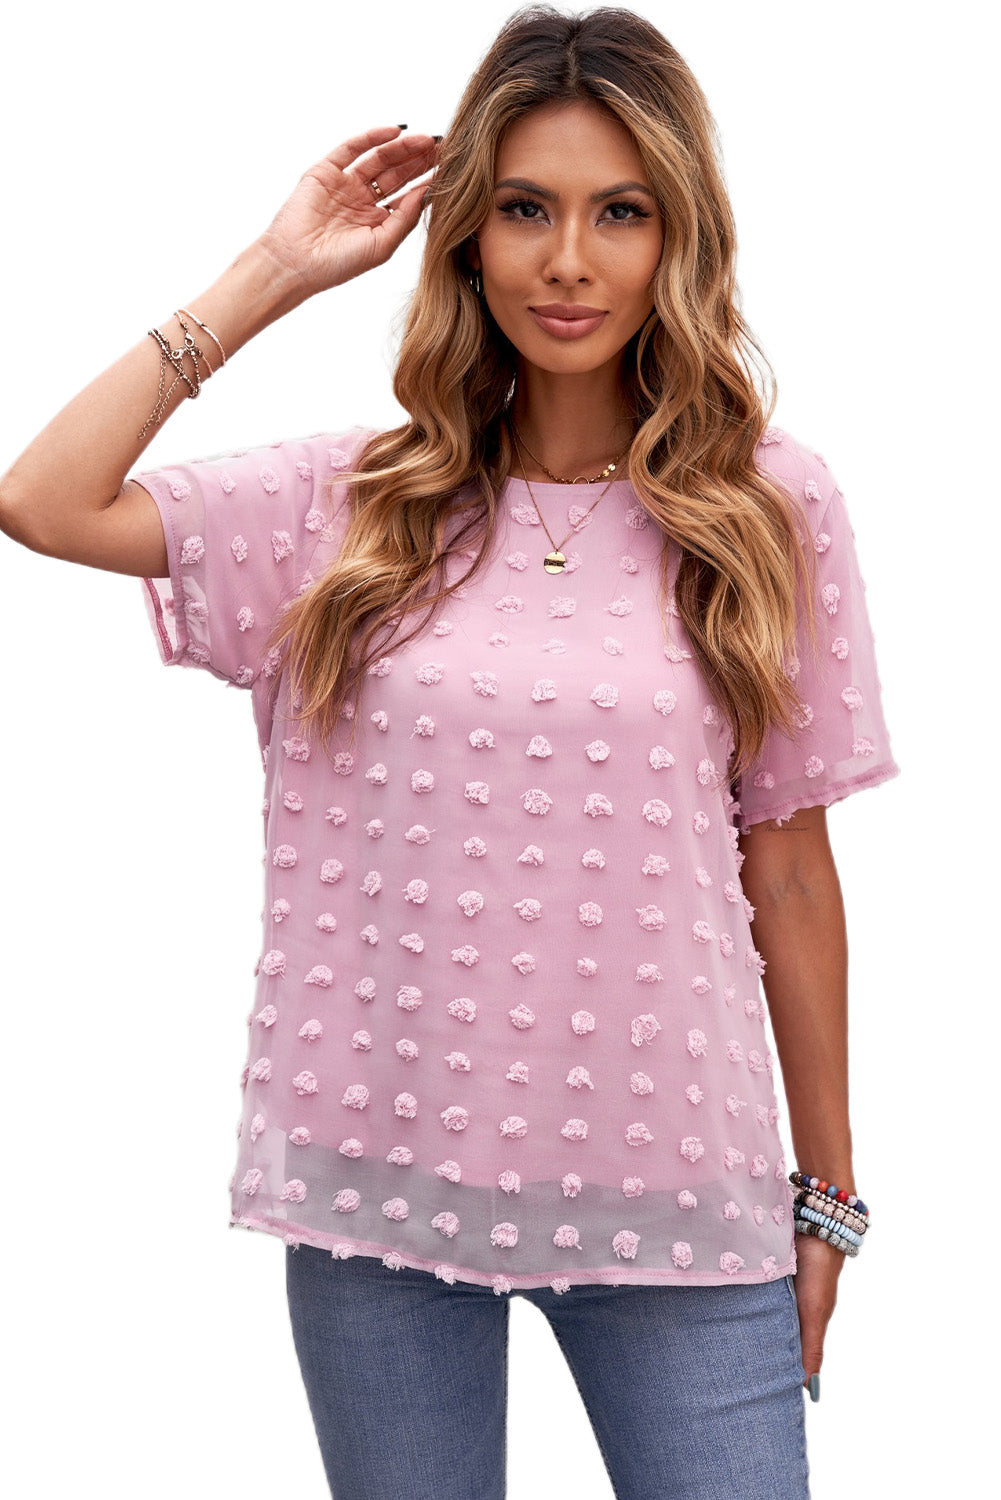 Light Pink Swiss Dot Short Sleeve Summer Top for Women